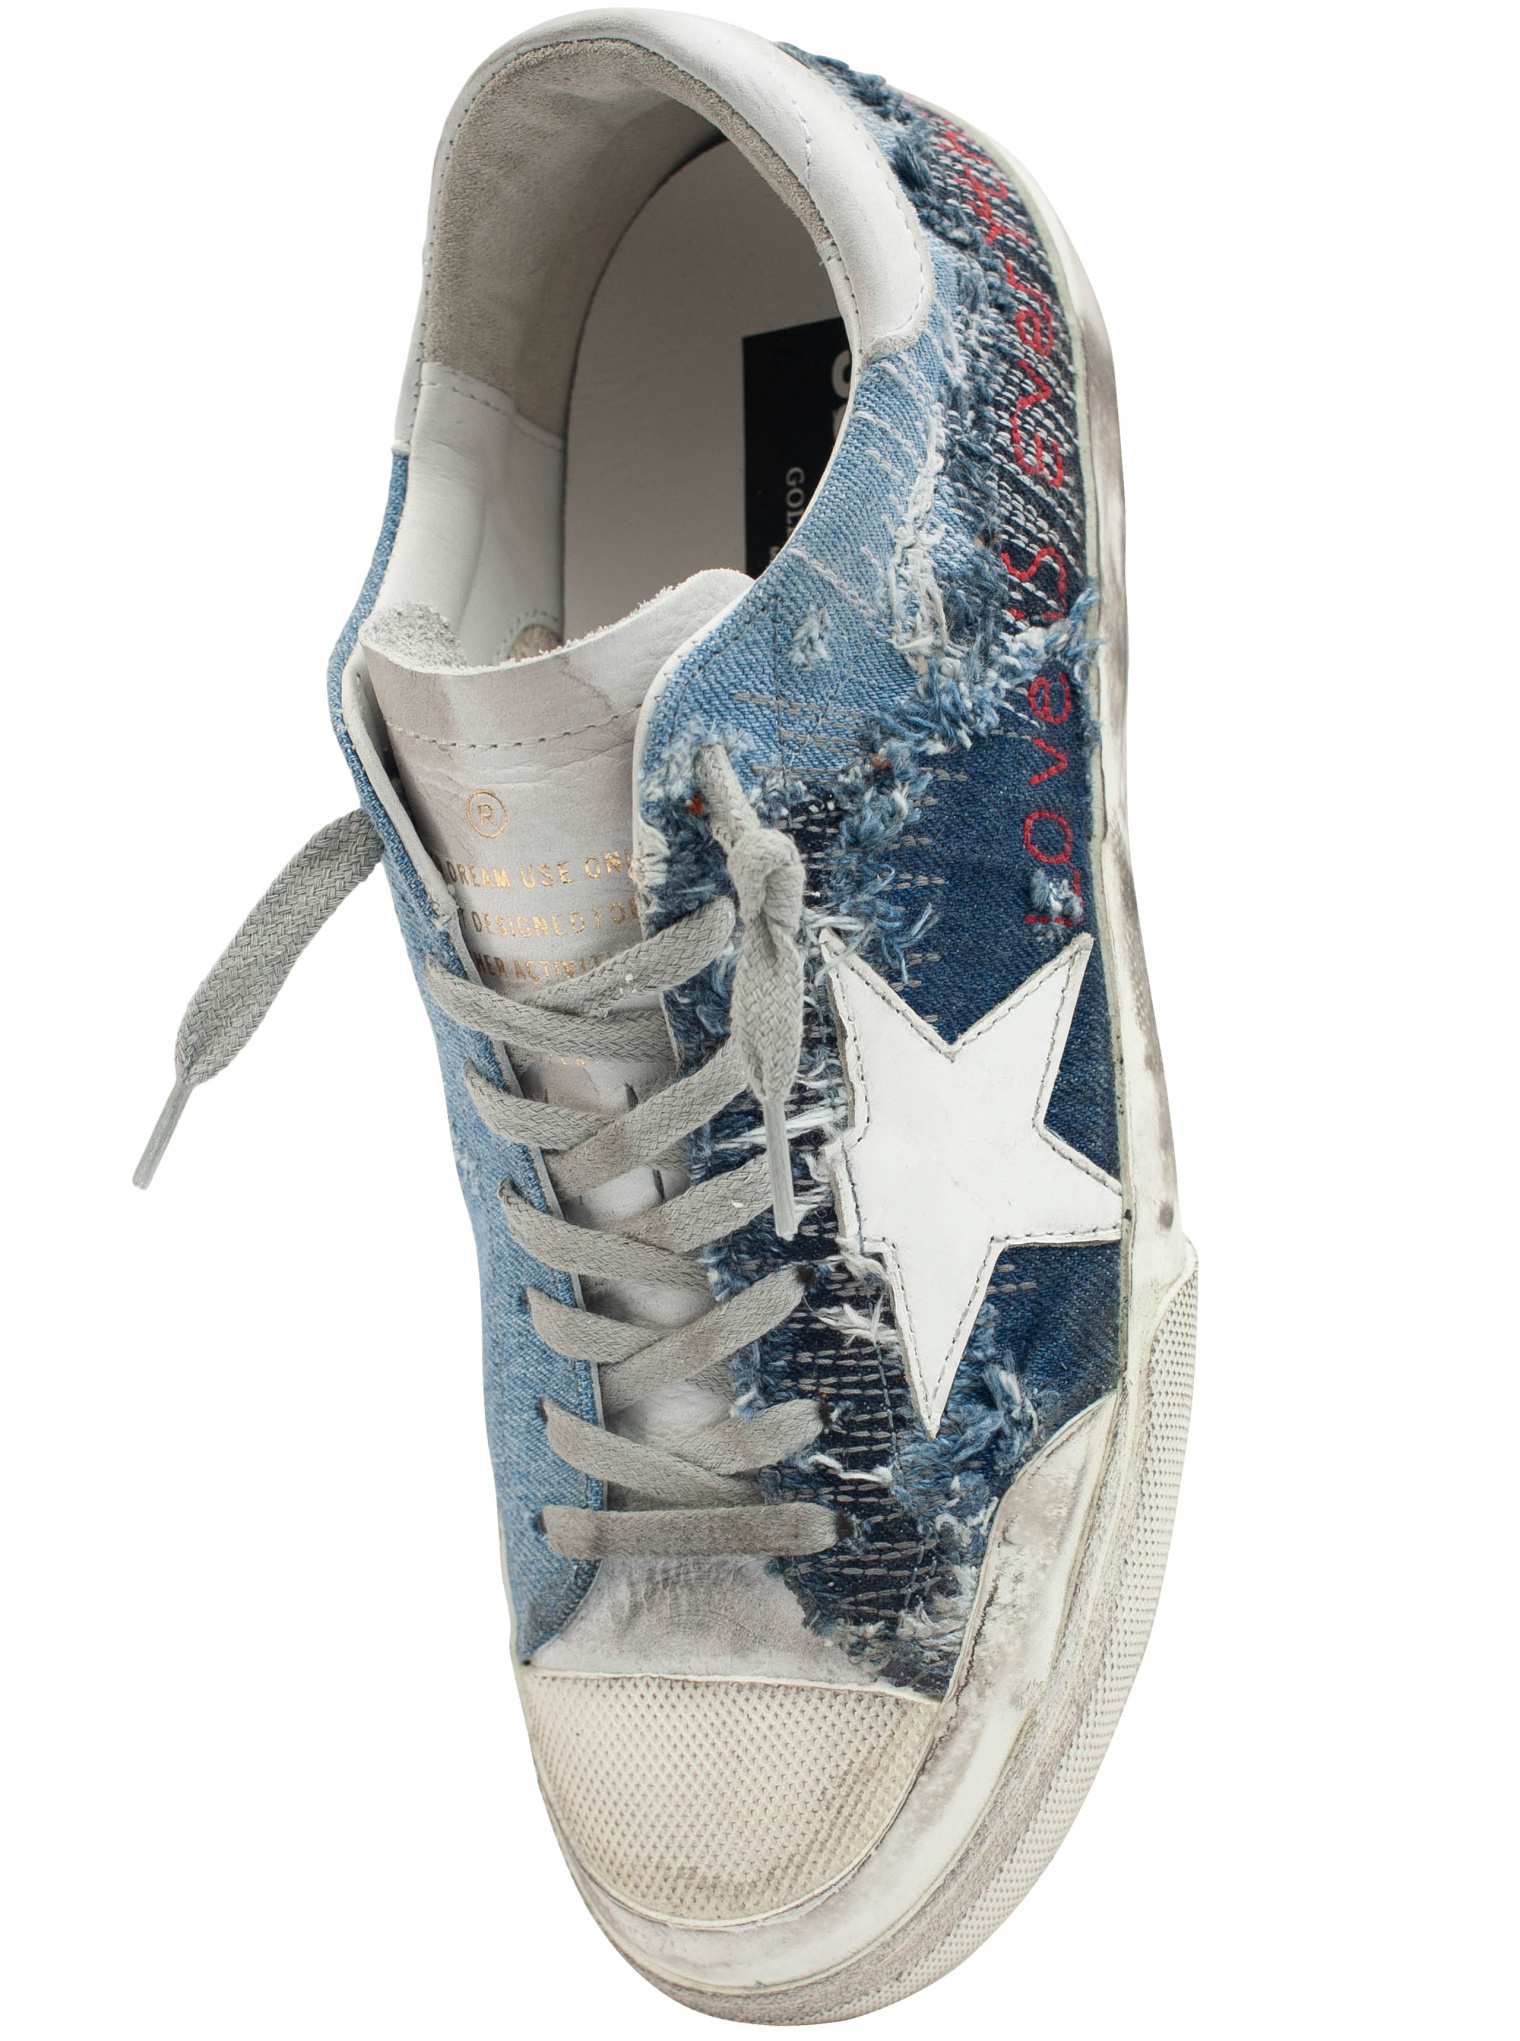 Buy Goose blue denim superstar penstar sneakers for $615 online on SV77, GMF00107/F000796/80532